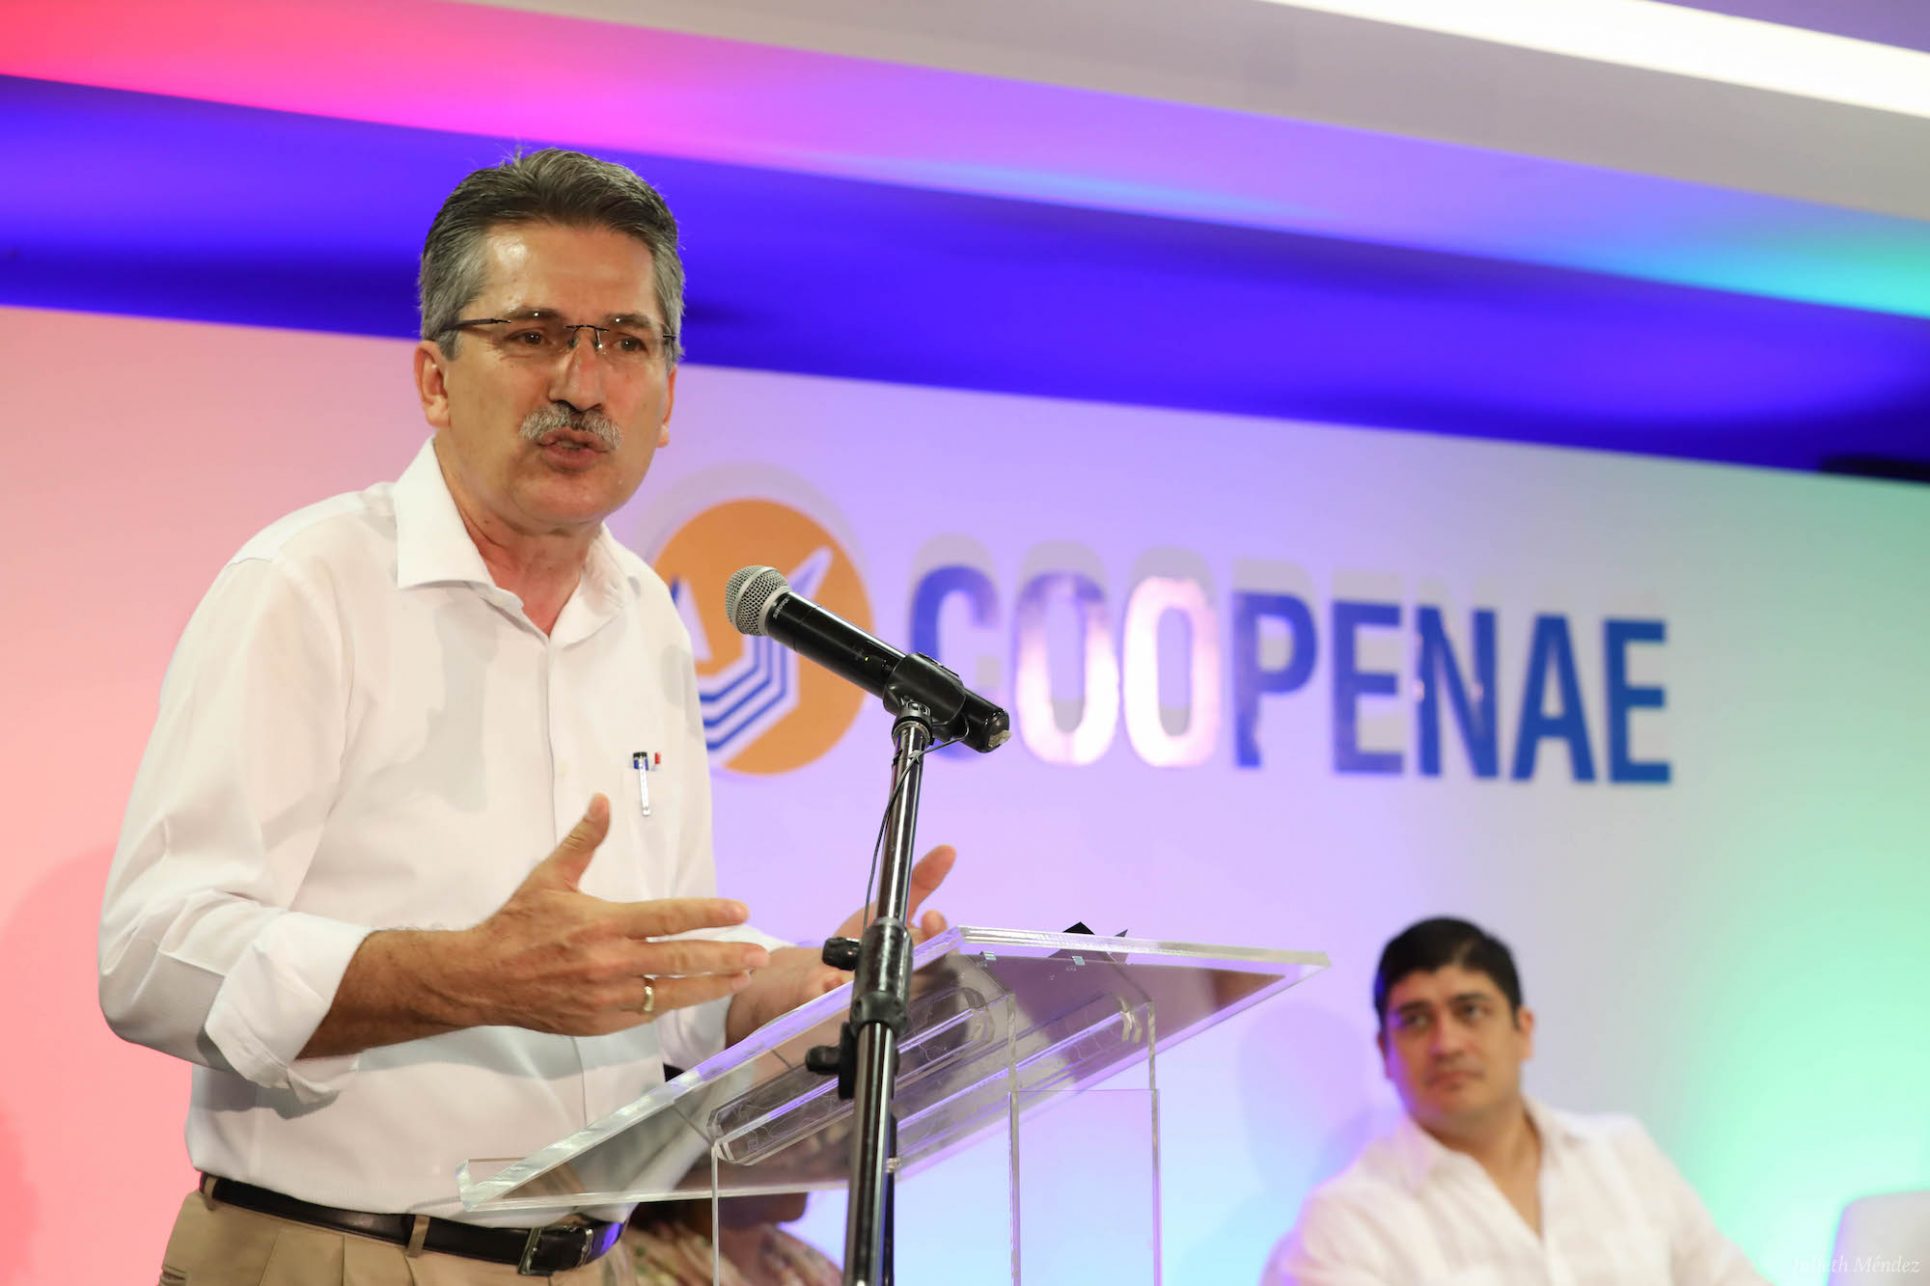 Welmer Ramos descarta instrucción de Carlos Alvarado: “Los diputados respondemos al partido”